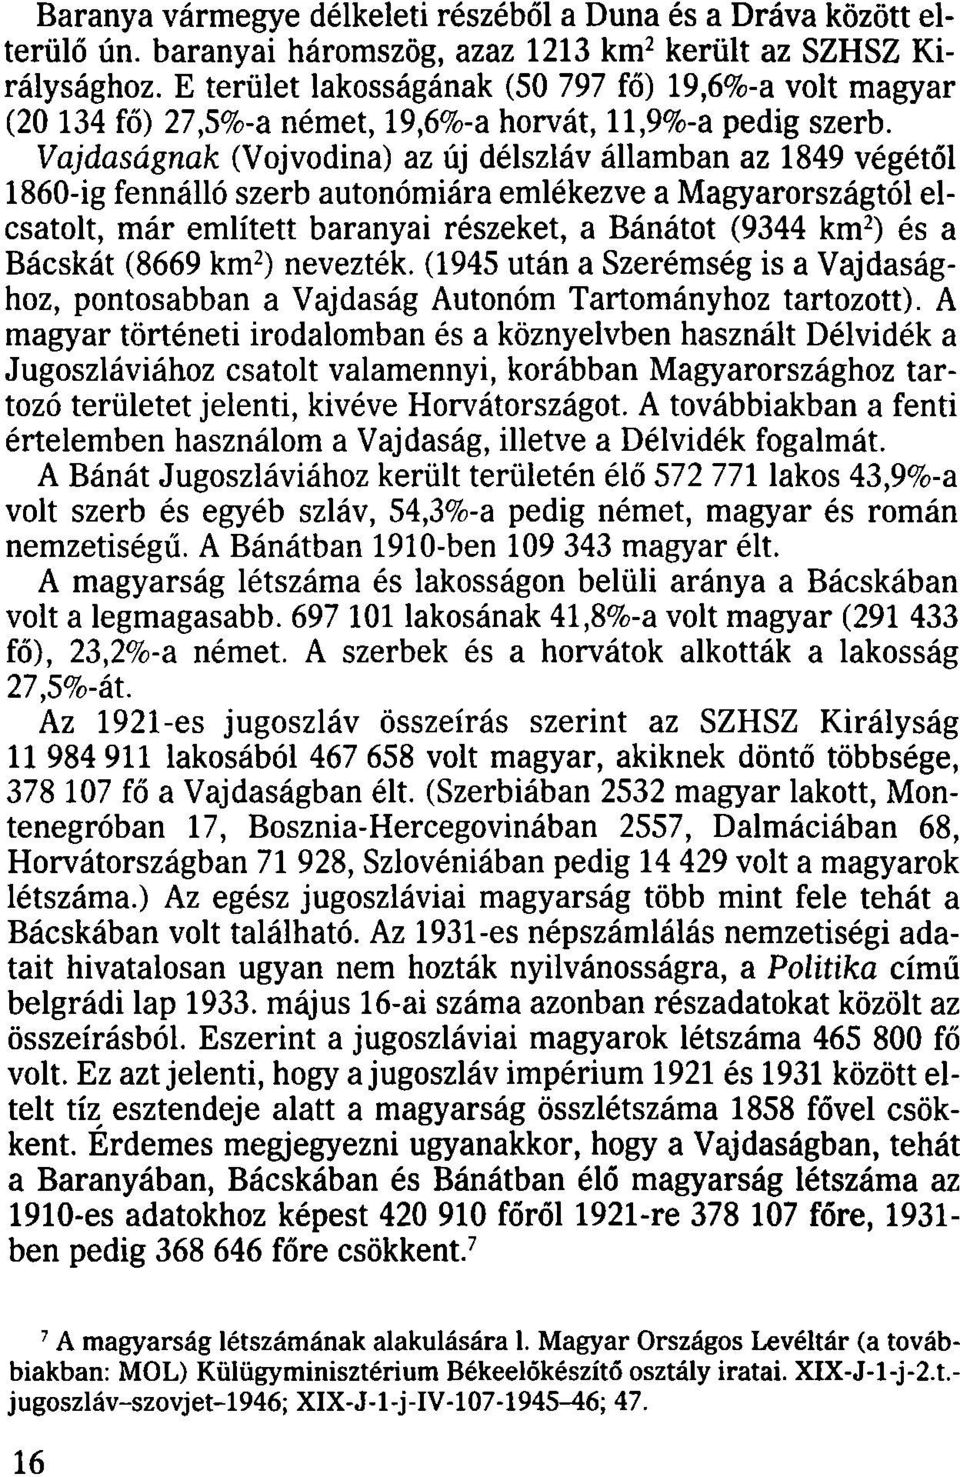 Vajdaságnak (Vojvodina) az új délszláv államban az 1849 végétől 1860-ig fennálló szerb autonómiára emlékezve a Magyarországtól elcsatolt, már említett baranyai részeket, a Bánátot (9344 km 2 ) és a